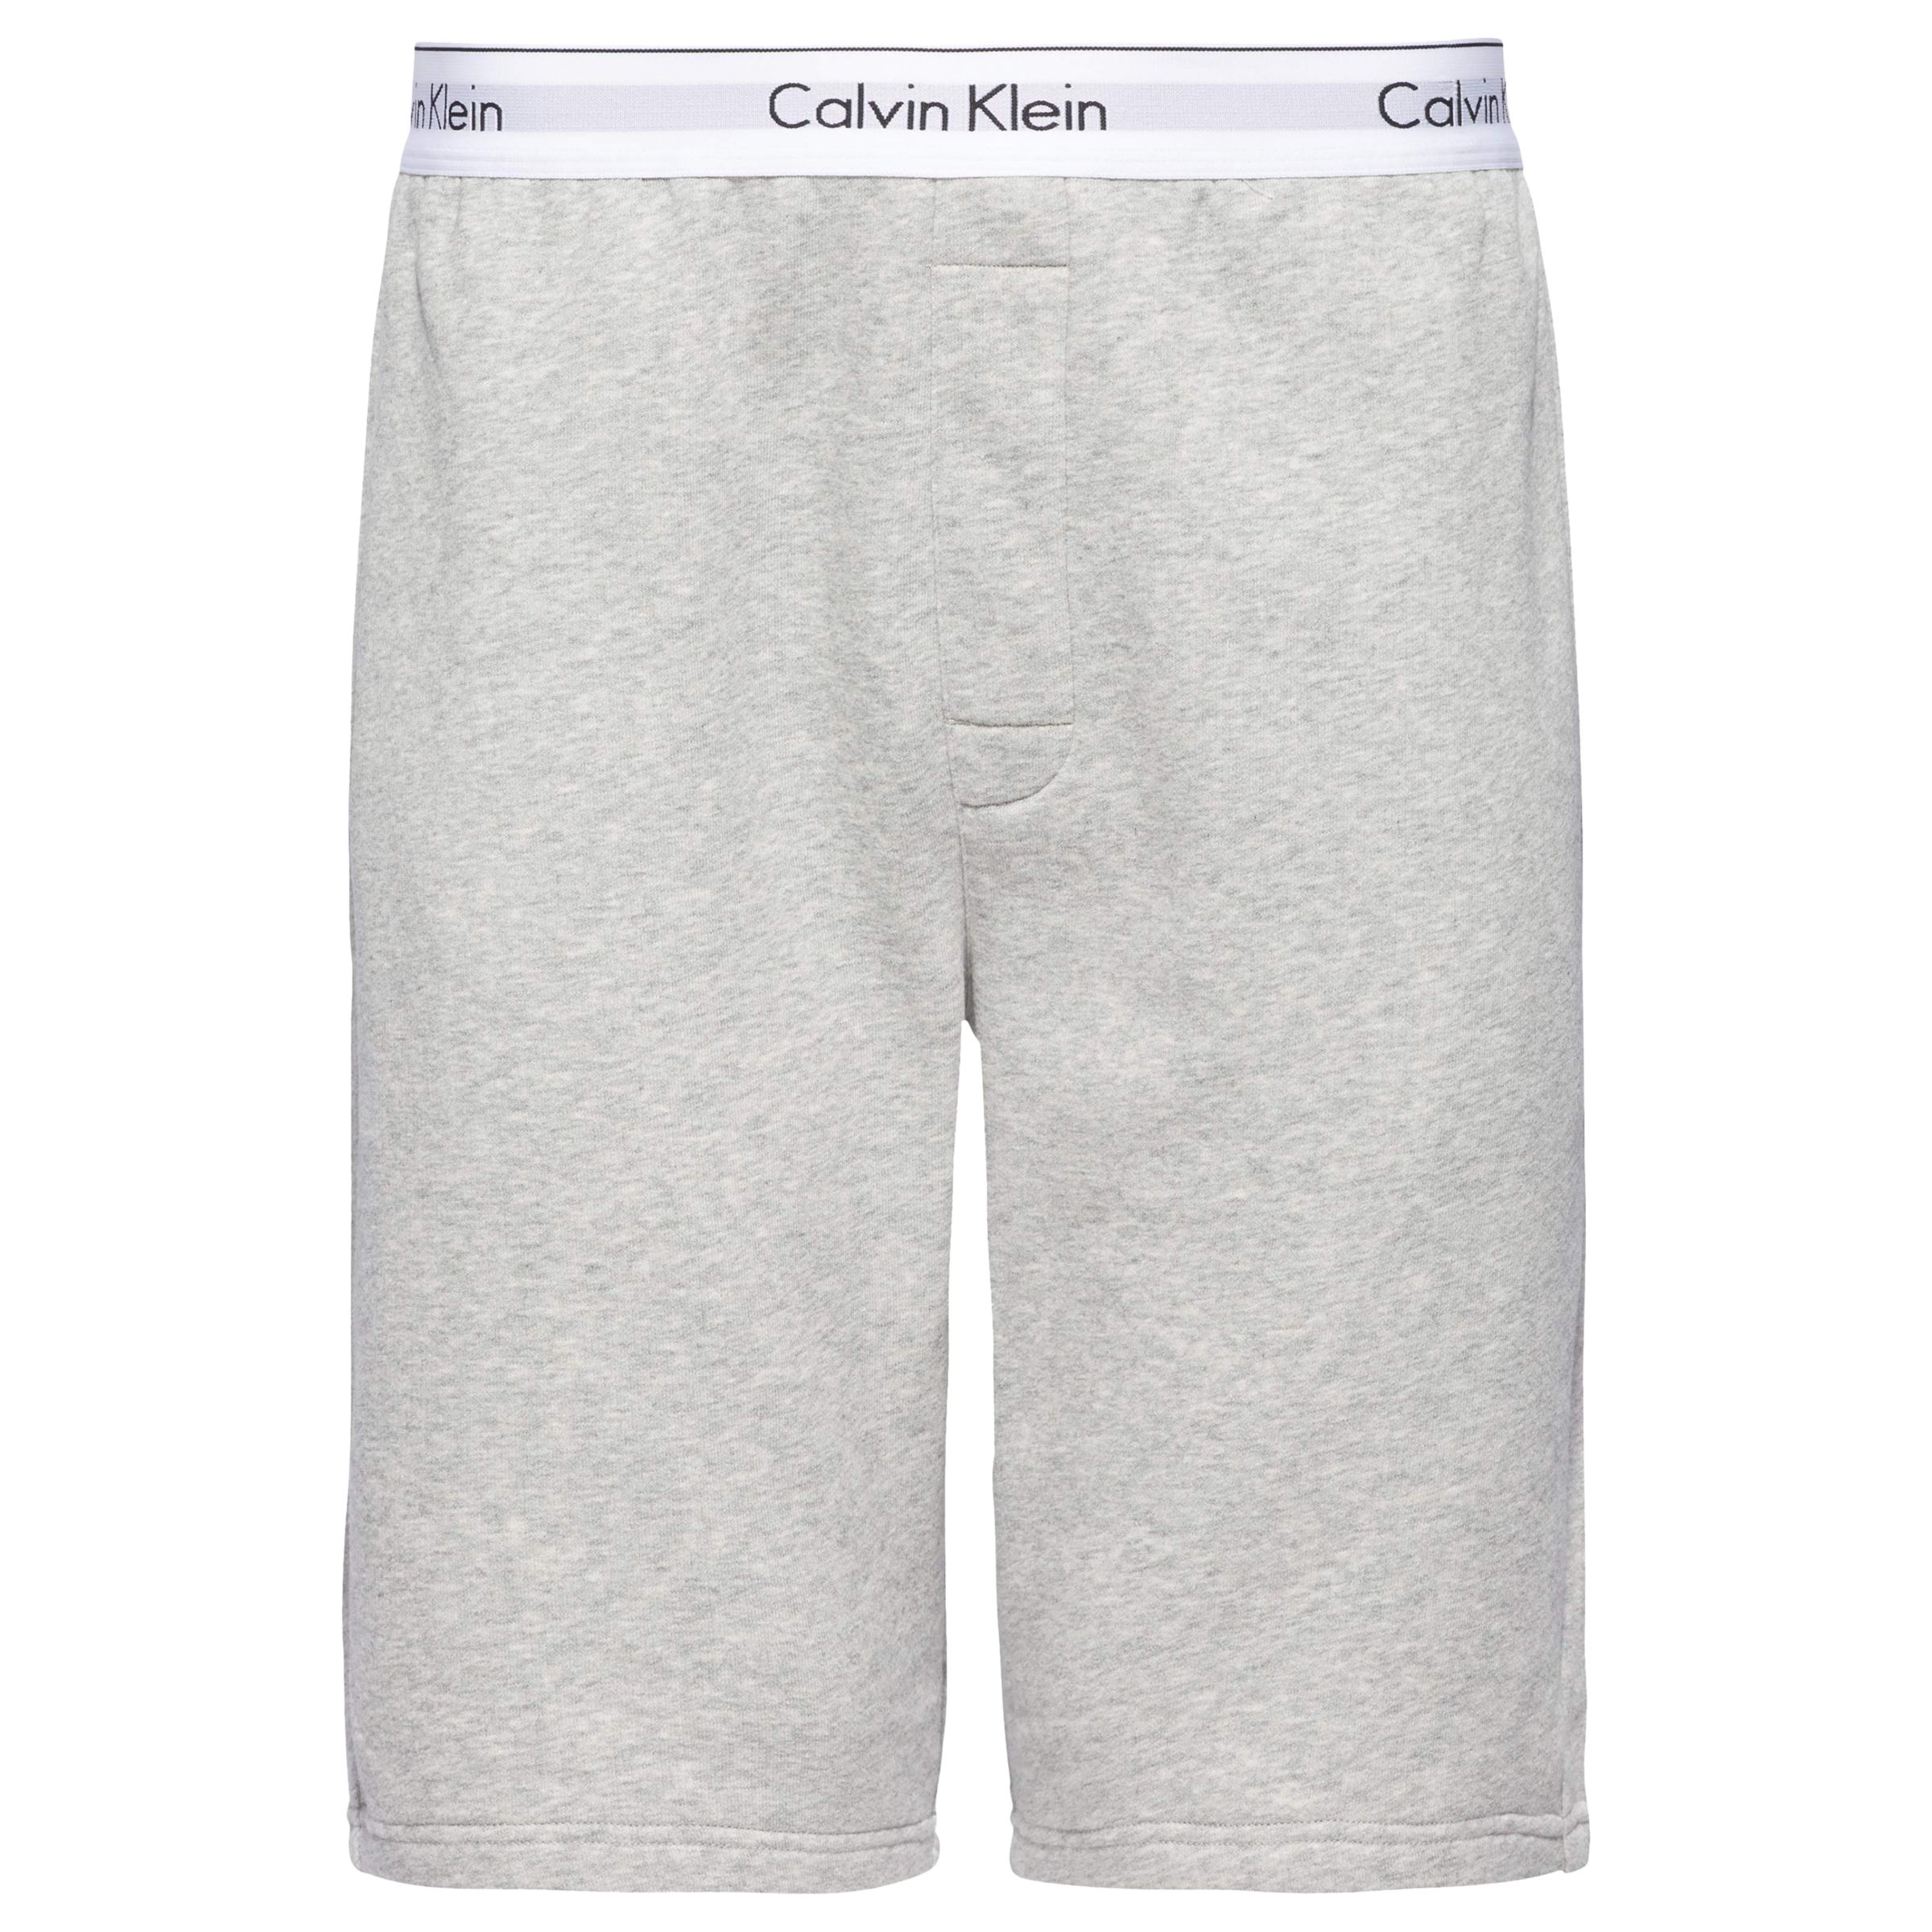 grey calvin klein shorts